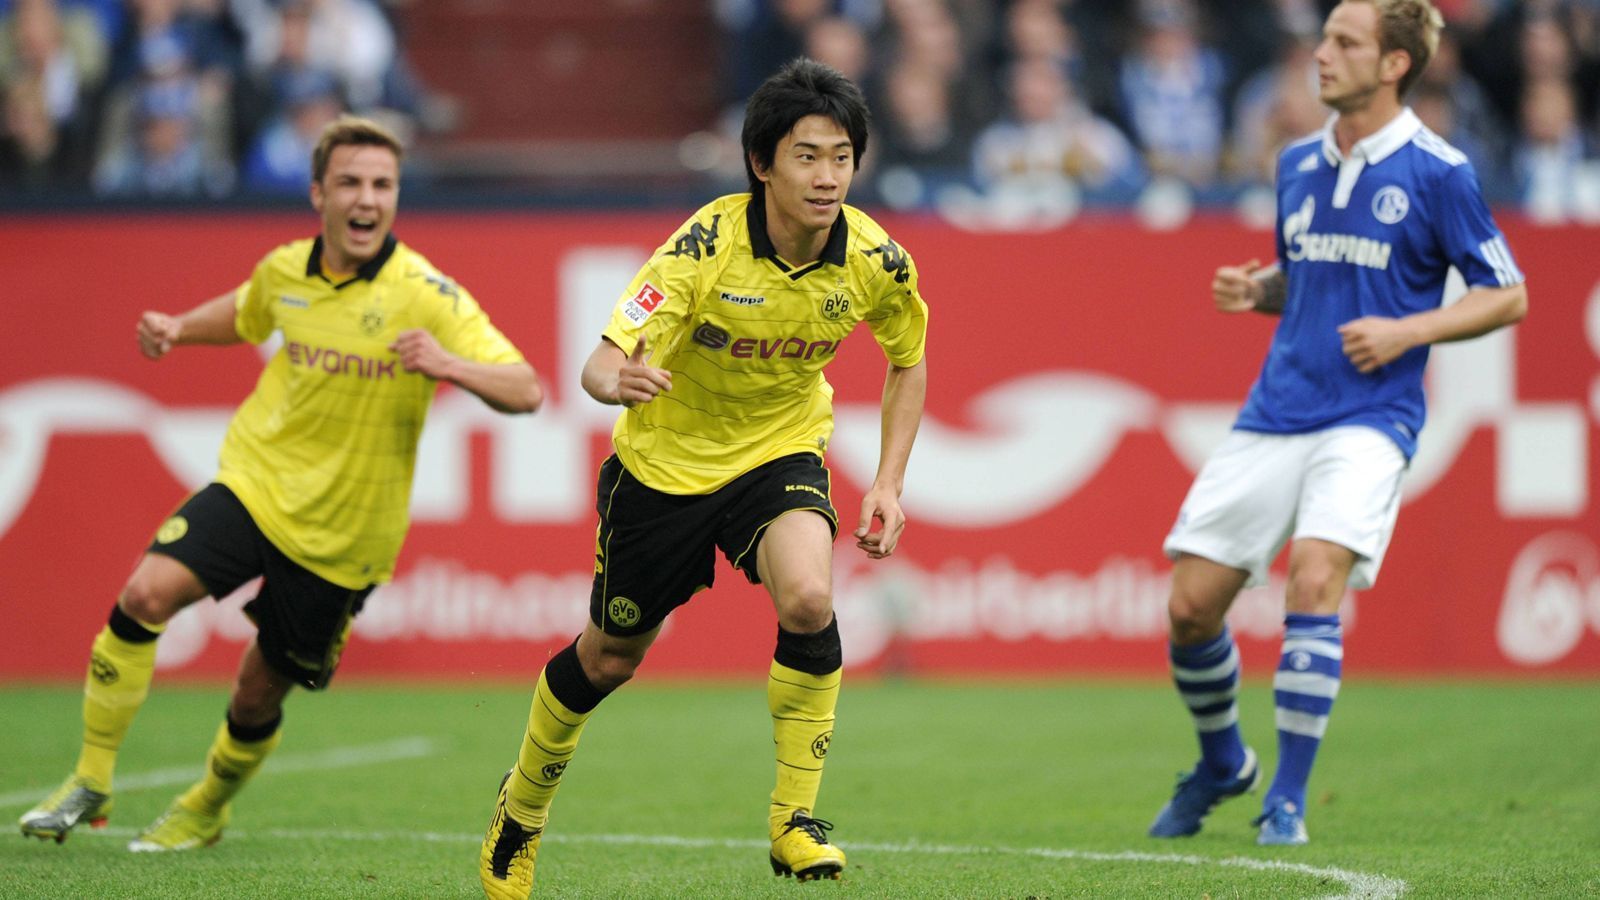 
                <strong>Mittelfeld - Shinji Kagawa</strong><br>
                Der damalige Dortmunder Neuzugang Shinji Kagawa hat gerade einmal vier Bundesliga-Spiele benötigt, um sich bei den BVB-Fans unsterblich zu machen. Am 19. September 2010 steuerte der Japaner beim 3:1-Sieg auf Schalke zwei Treffer für die Gäste bei und war damit Matchwinner dieses Revierderbys. In seinen beiden BVB-Ären brachte es Kagawa auf insgesamt vier Treffer gegen Schalke - gegen kein anderes Bundesliga-Team traf der heutige PAOK-Profi so häufig.
              